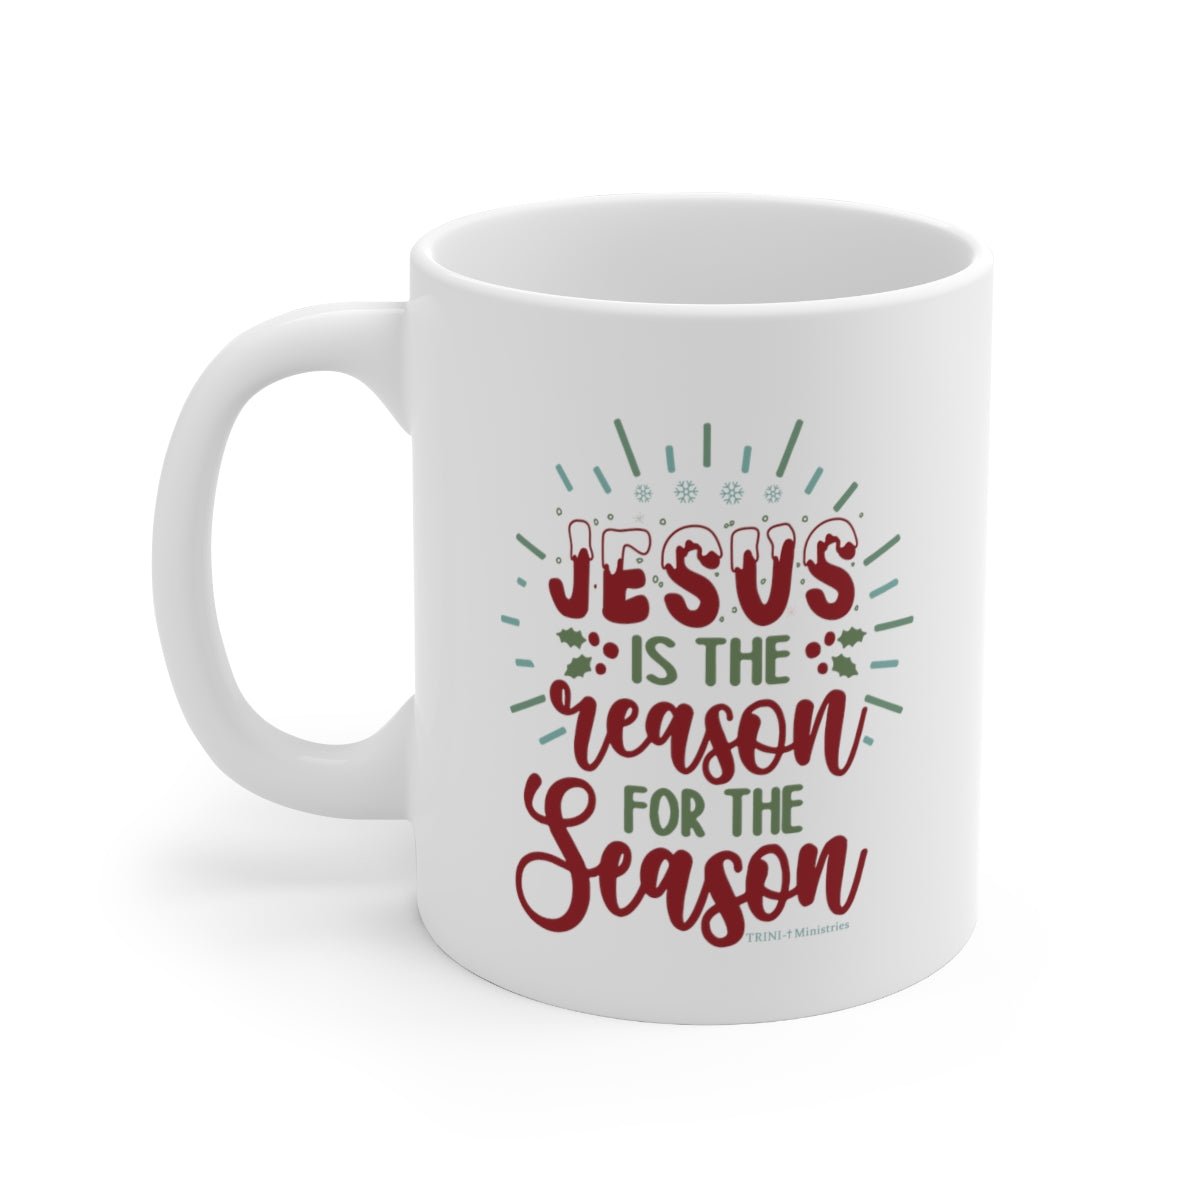 Reason for the Season - Mug - Trini-T Ministries